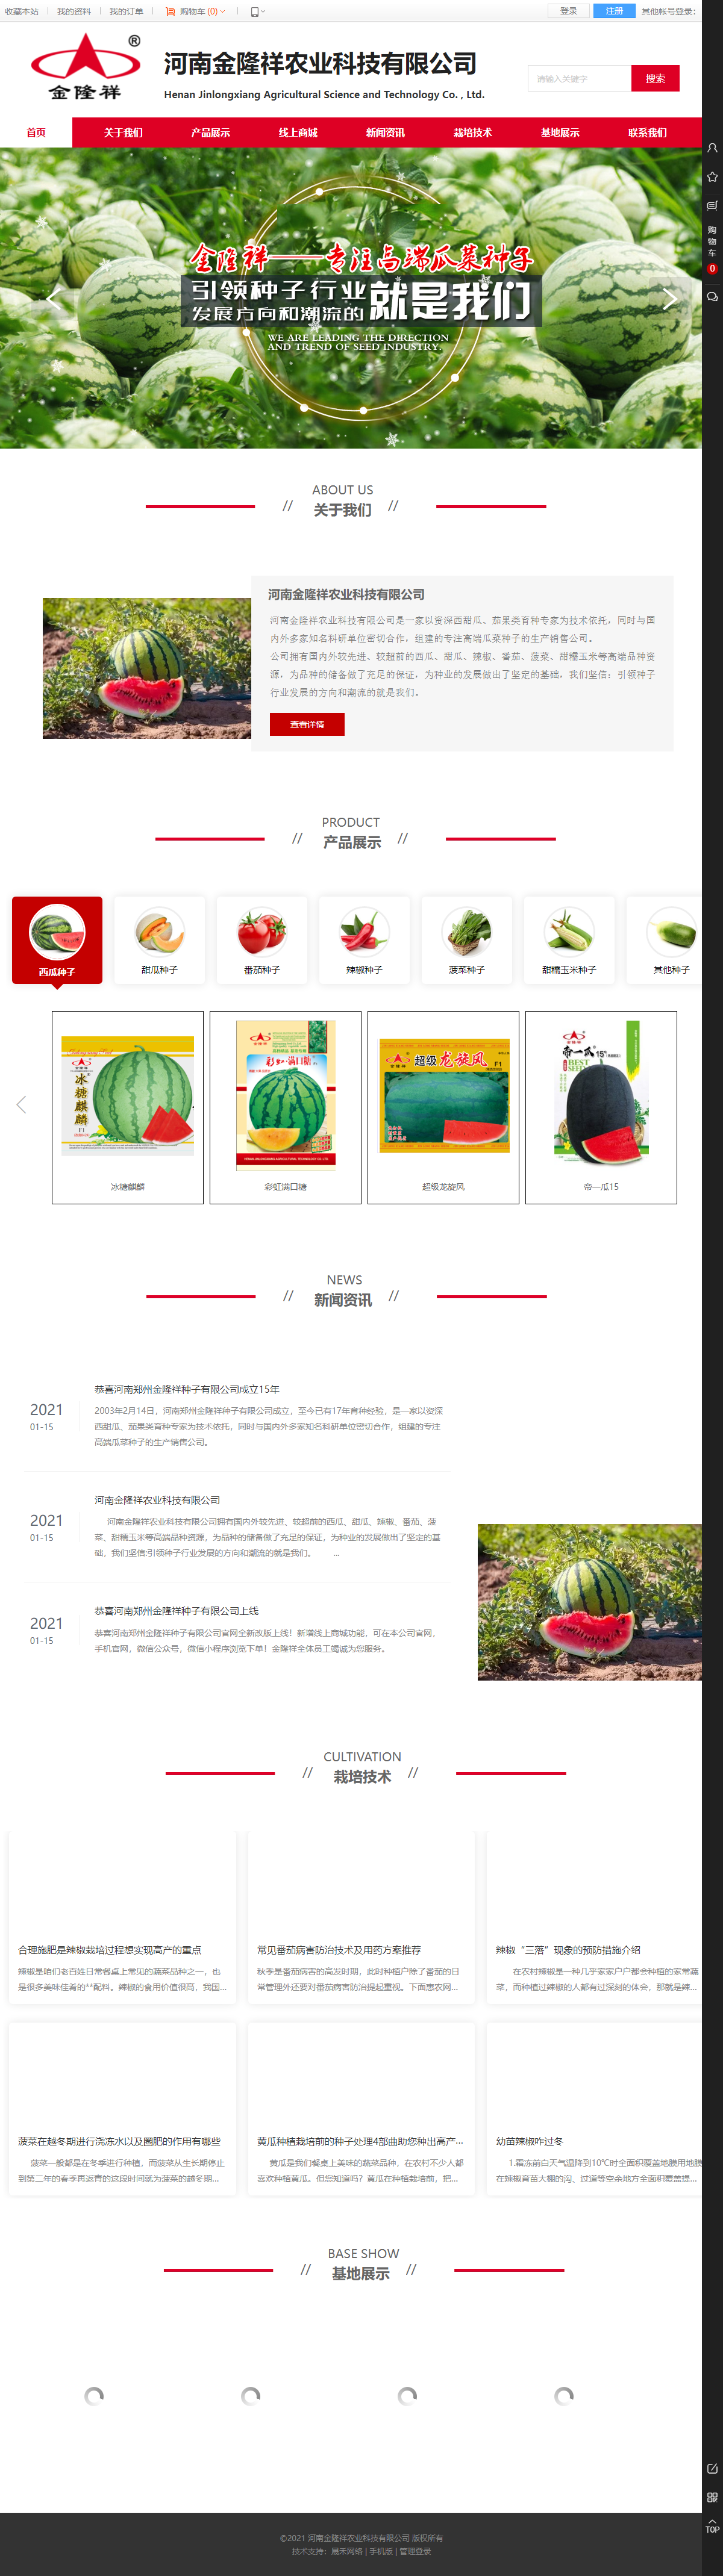 河南金隆祥农业科技有限公司网站案例